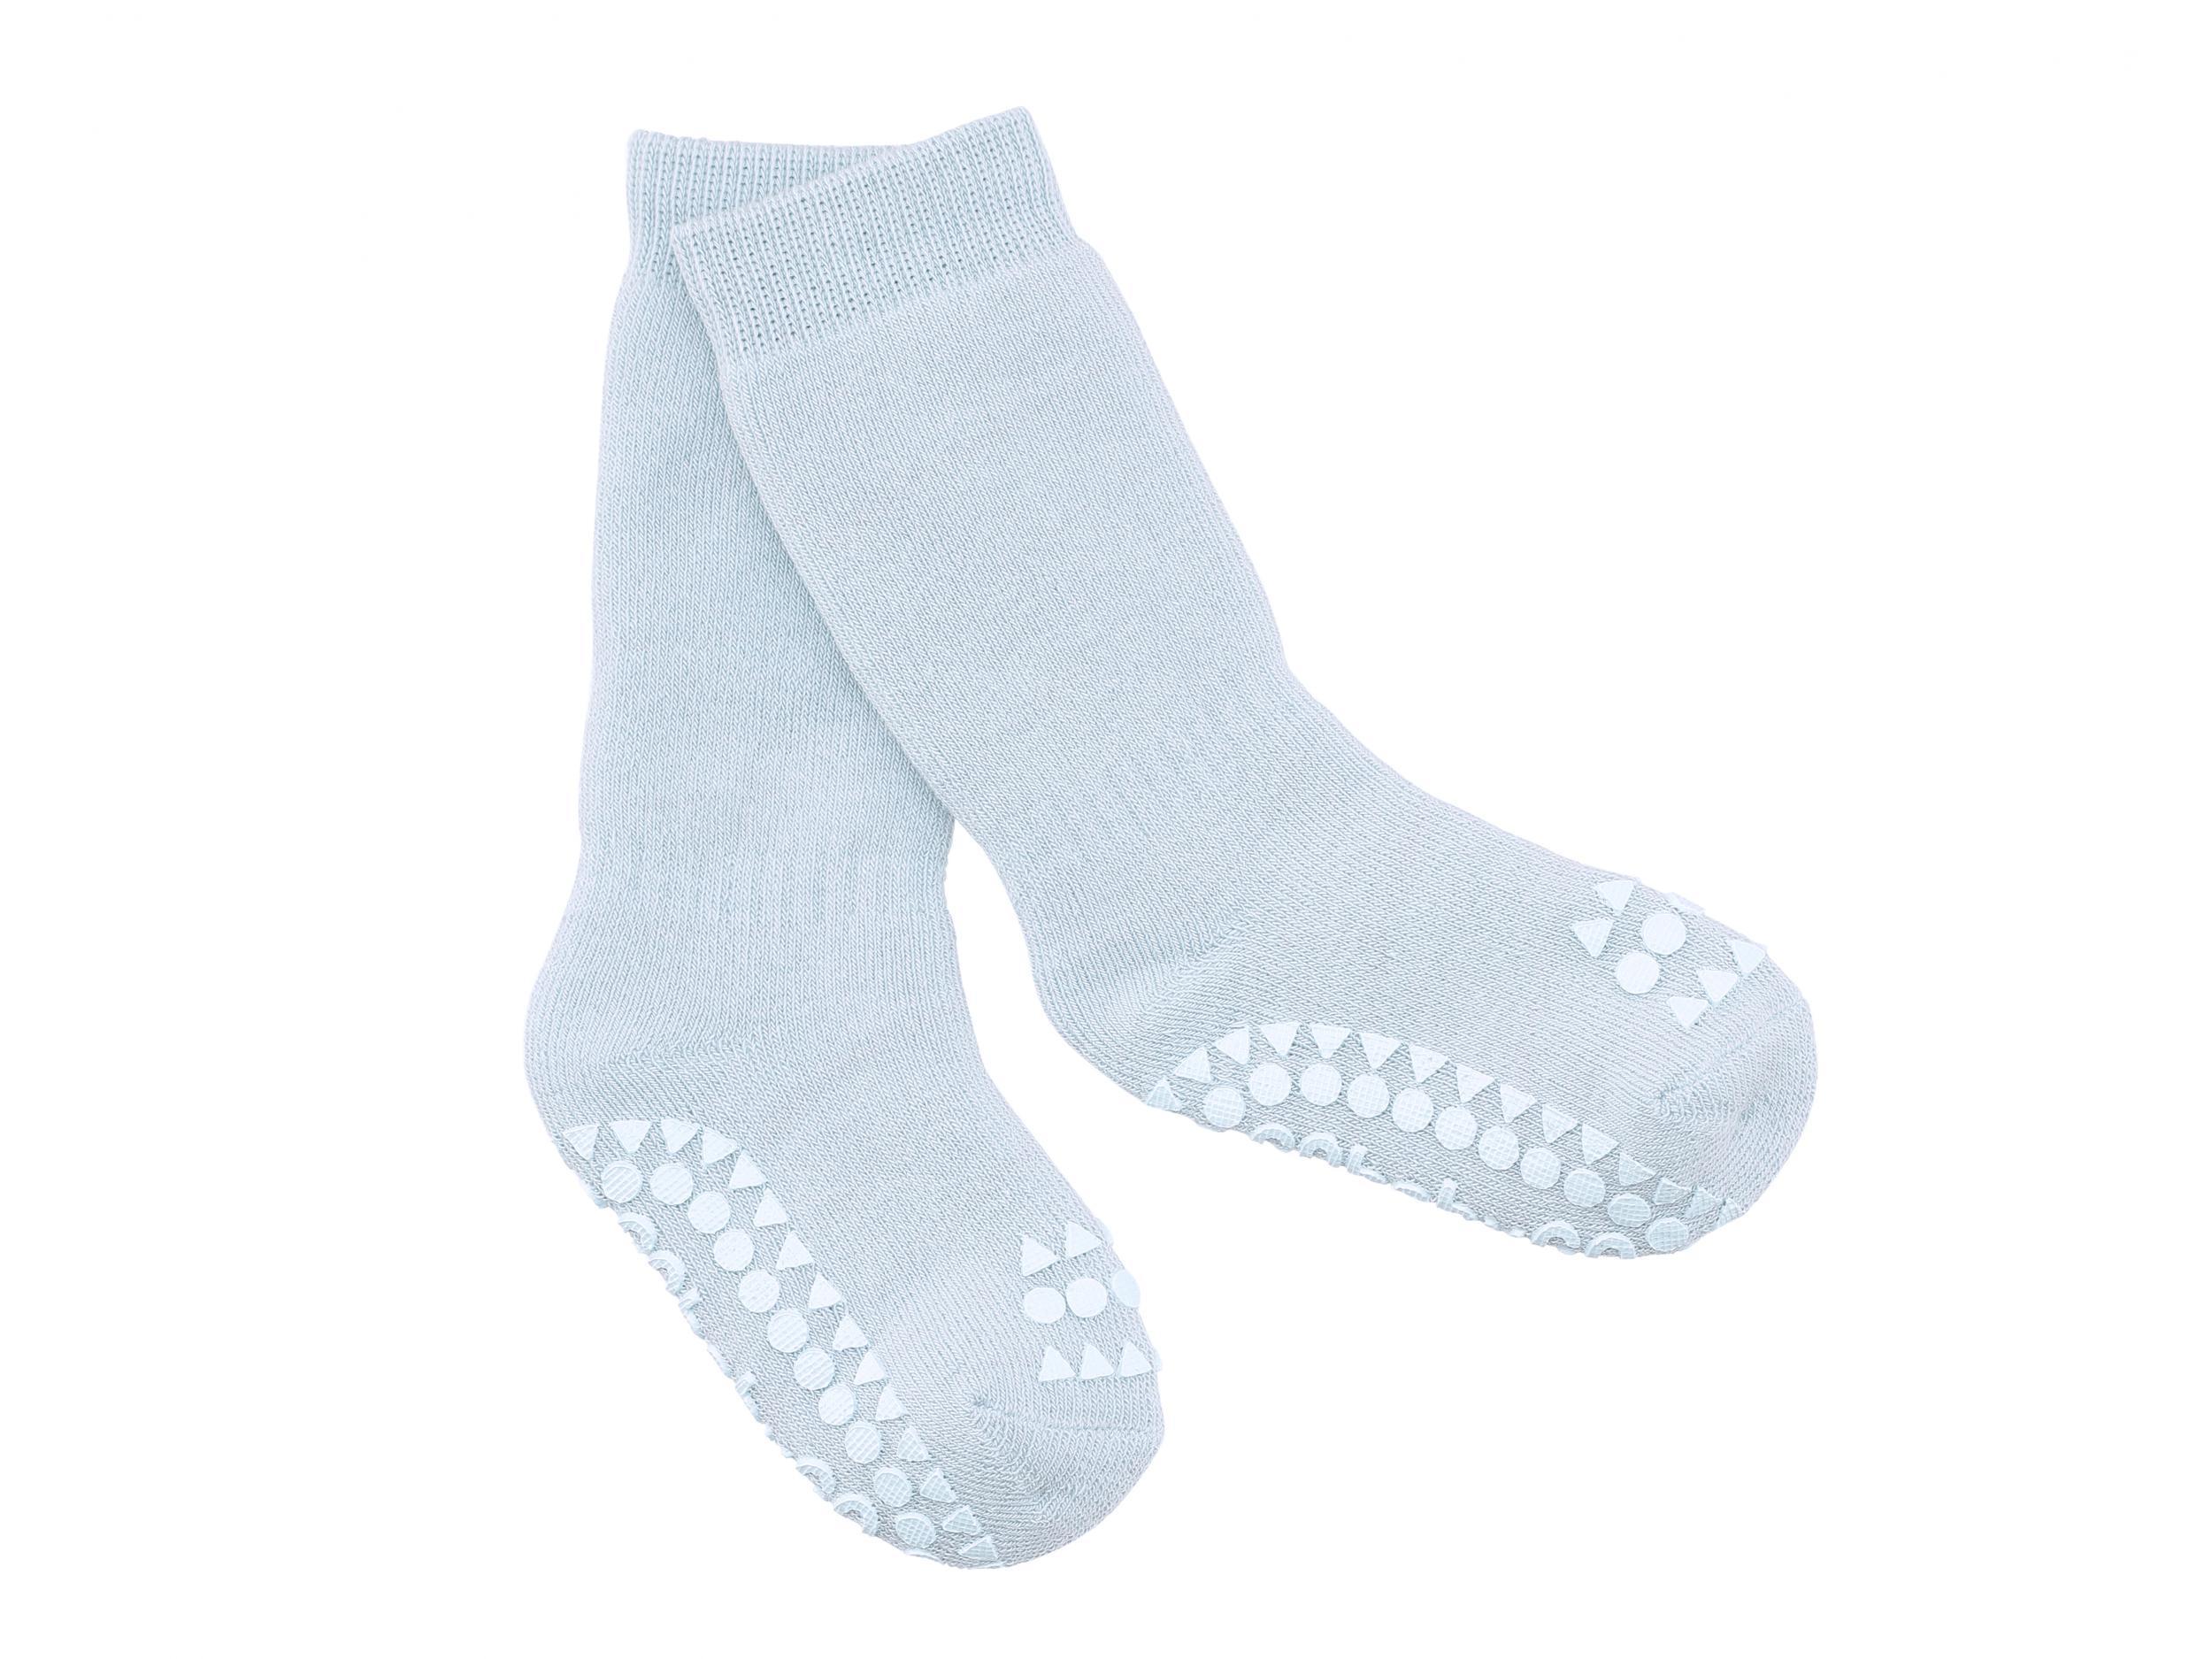 DANMEI 1 Pair Baby Infants Anti-slip Toddler Floor Socks Christmas Xmas Red Step Skid Lovely Socks for 0-2 Years 